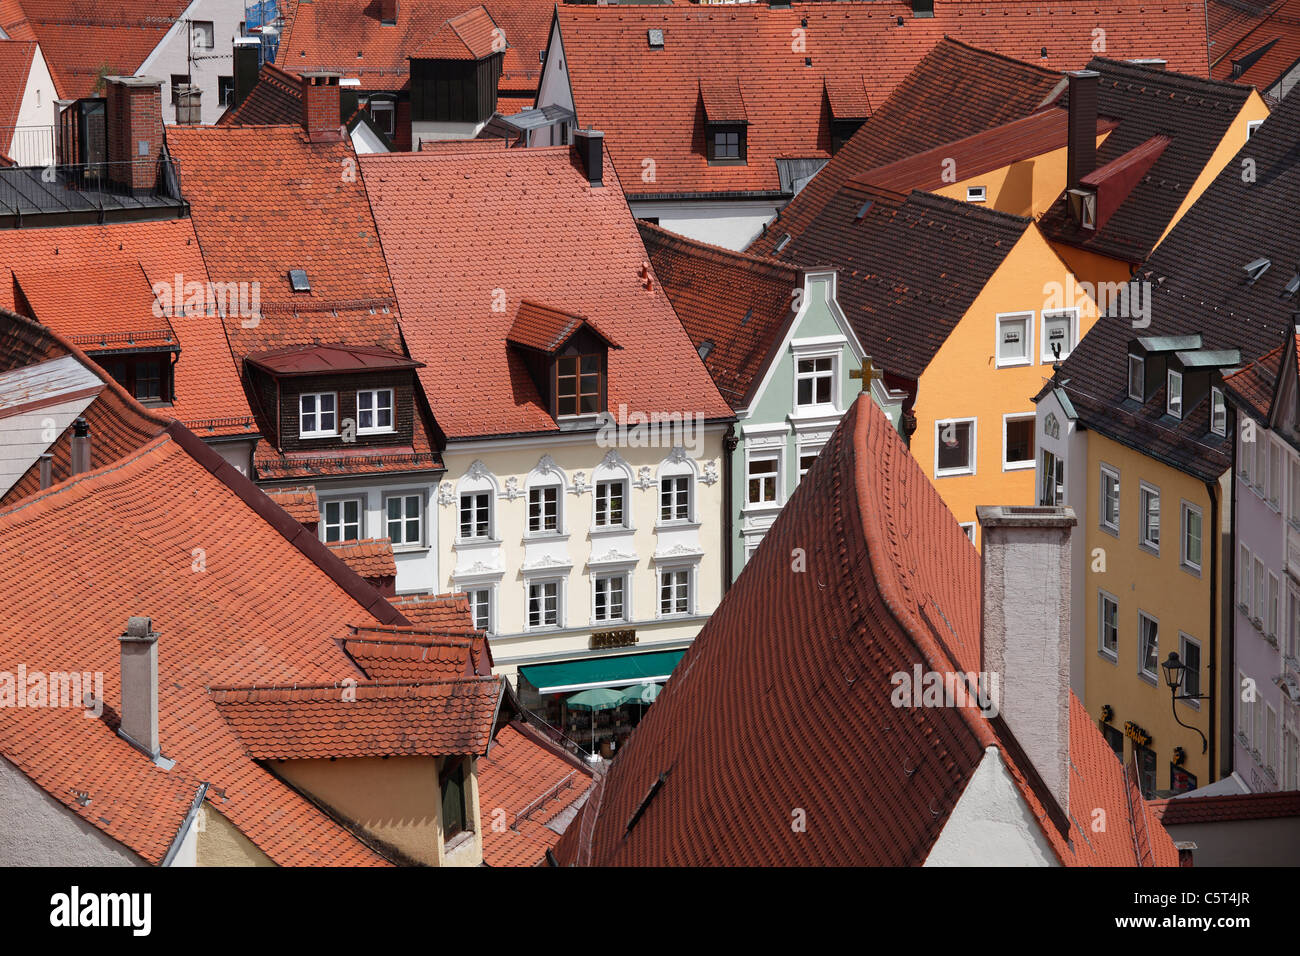 Alemania, Baviera, suabia, Allgaeu, Kaufbeuren, vista de los tejados de la ciudad vieja Foto de stock